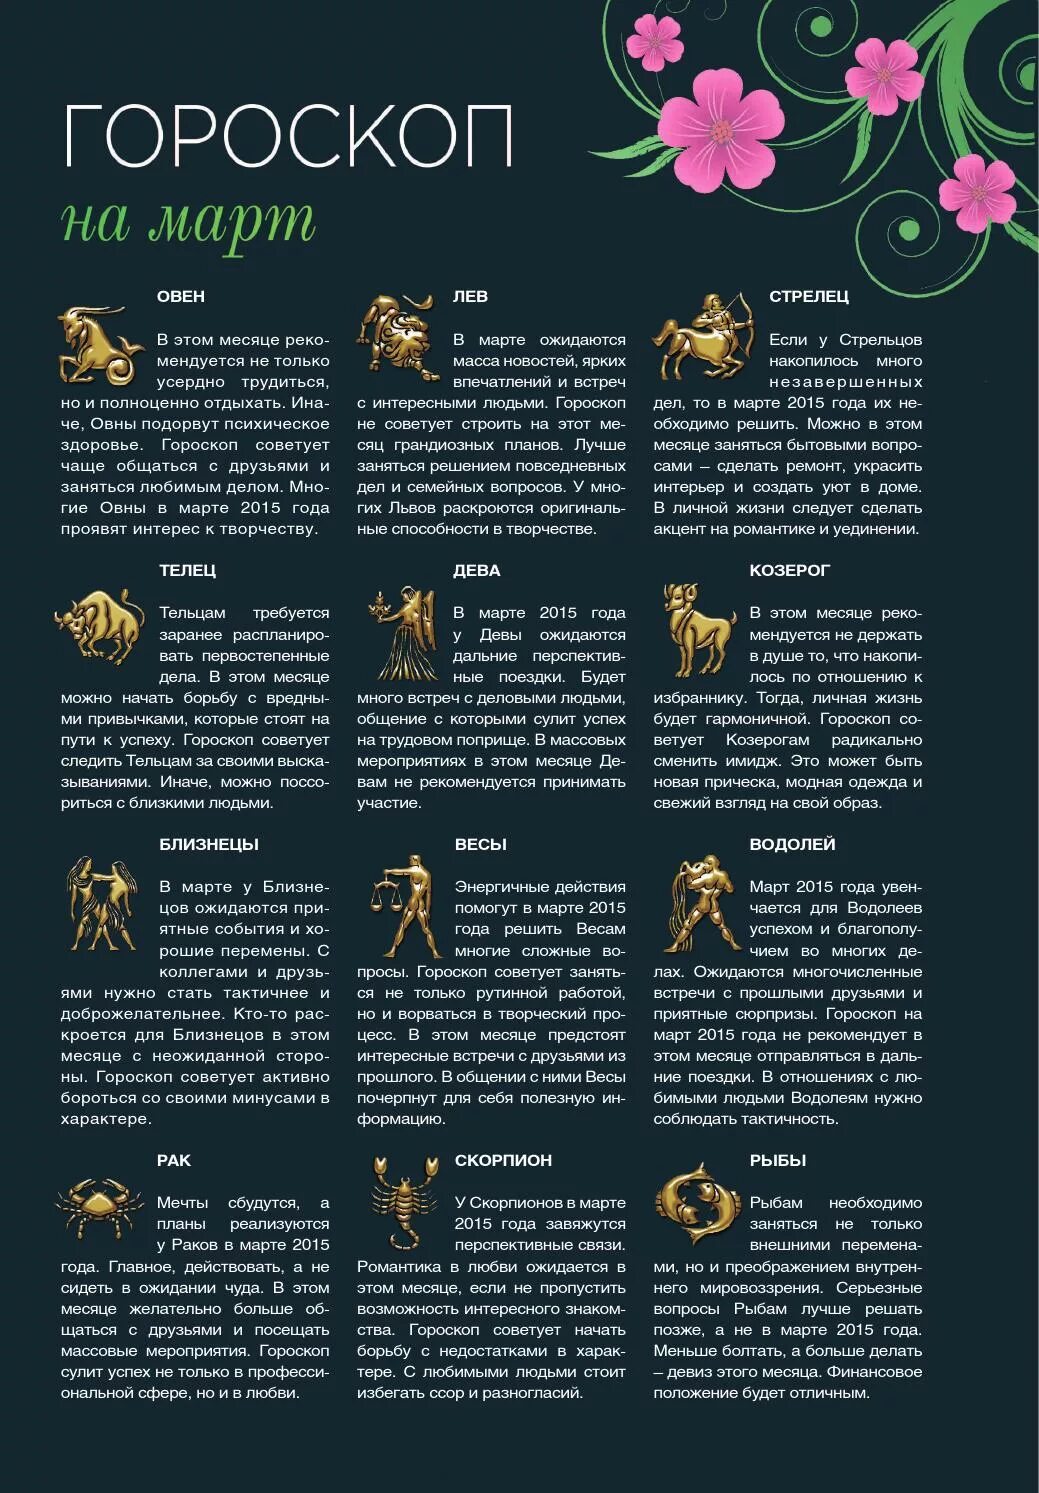 Гороскоп. Интересный гороскоп. Интересное про знаки зодиака. Картинки с описанием знаков зодиака.